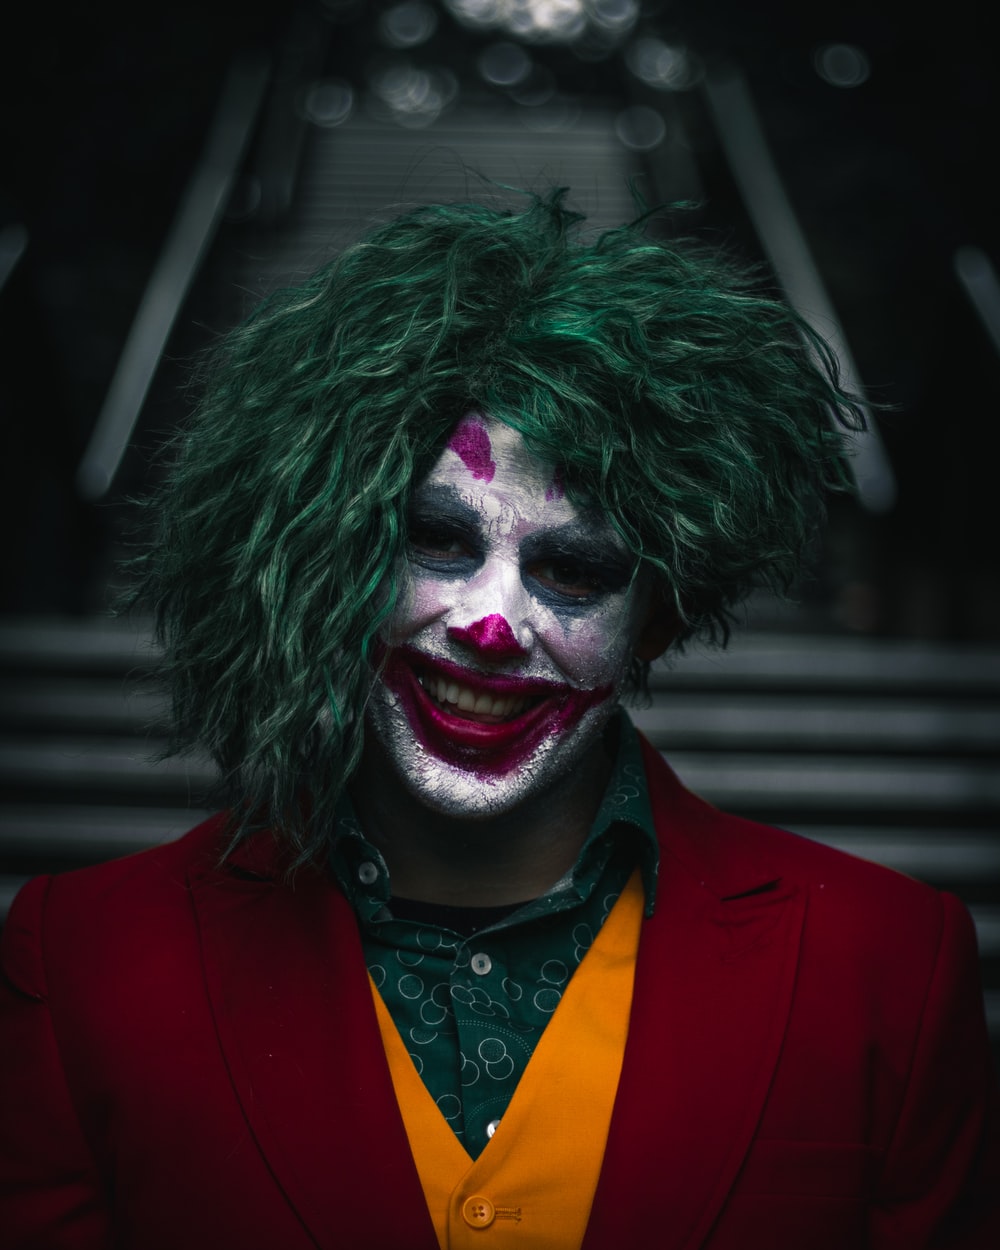 Joker Photo 2020 Wallpapers